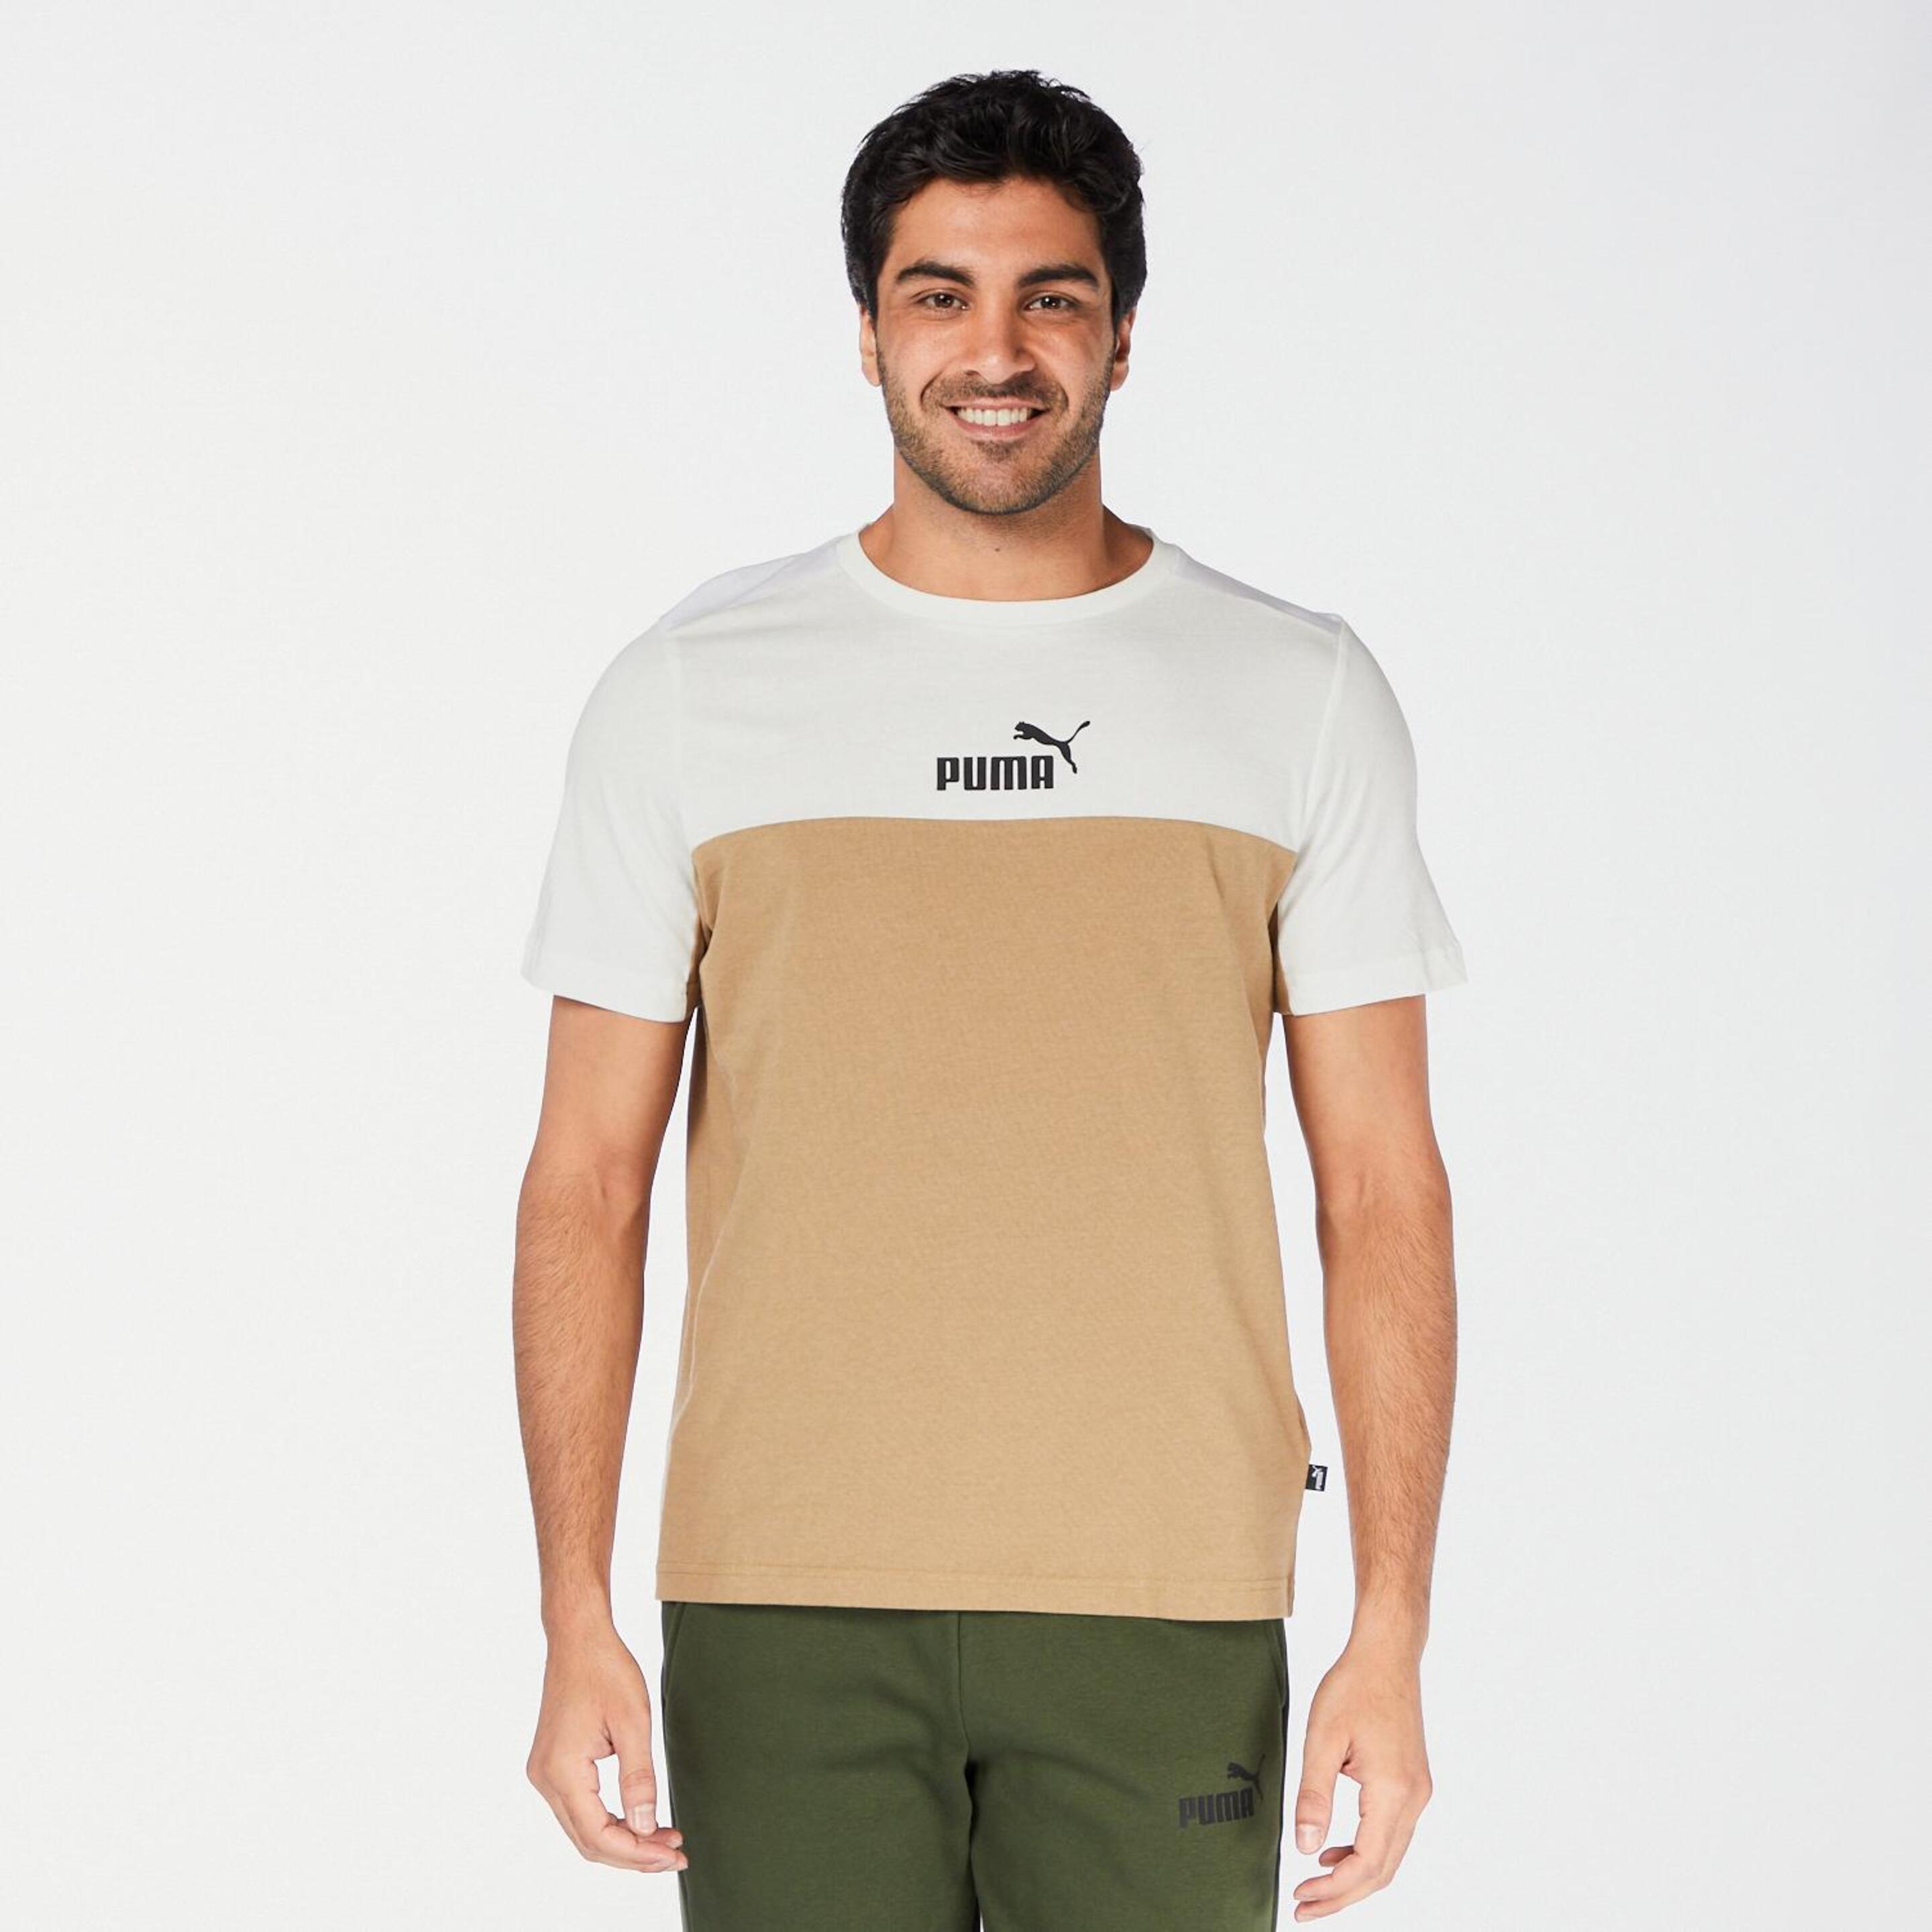 Puma Block - Marrón - Camiseta Hombre